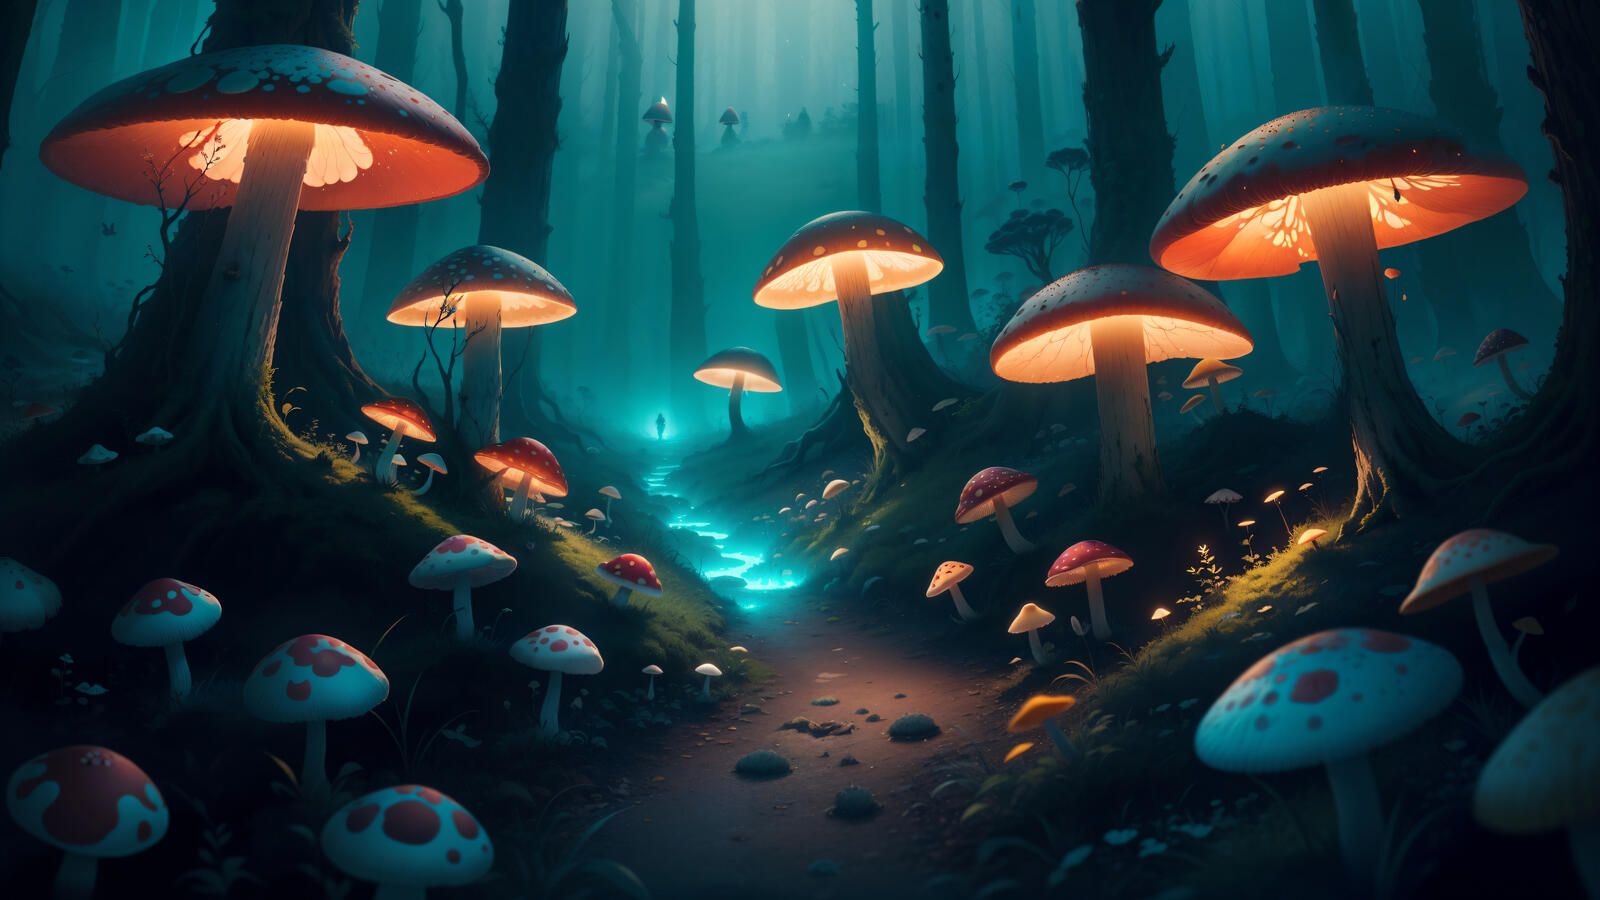 Бесплатное фото Таинственная лесная тропинка с большими грибами